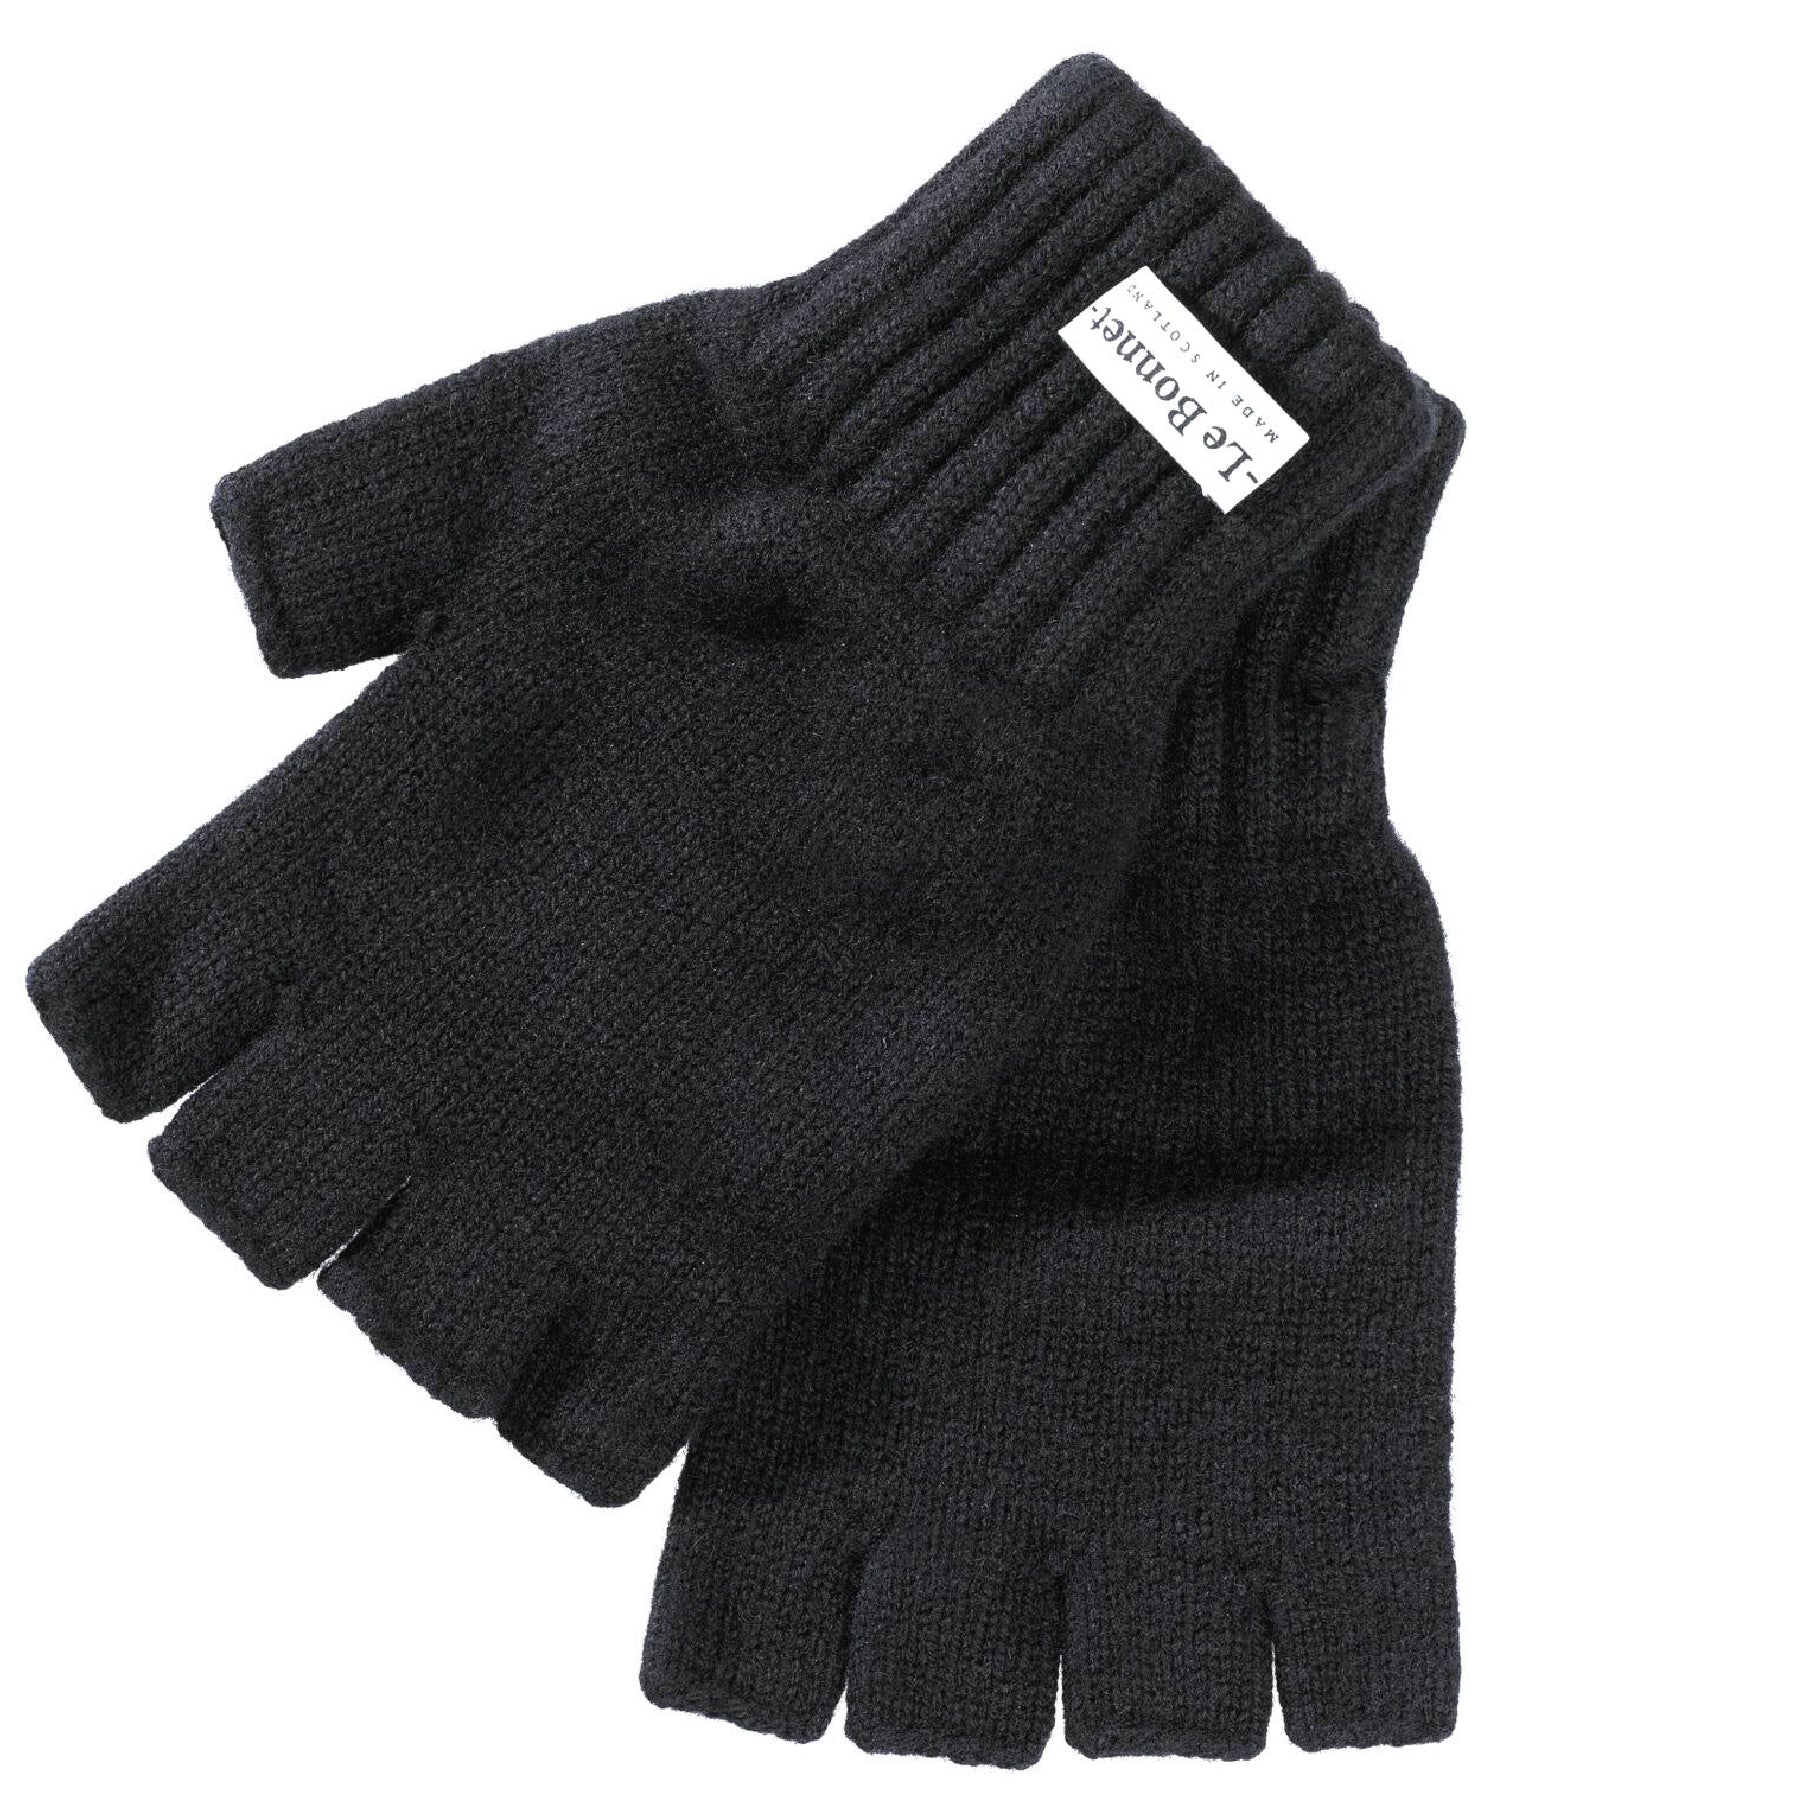 Gloves Fingerless Onyx